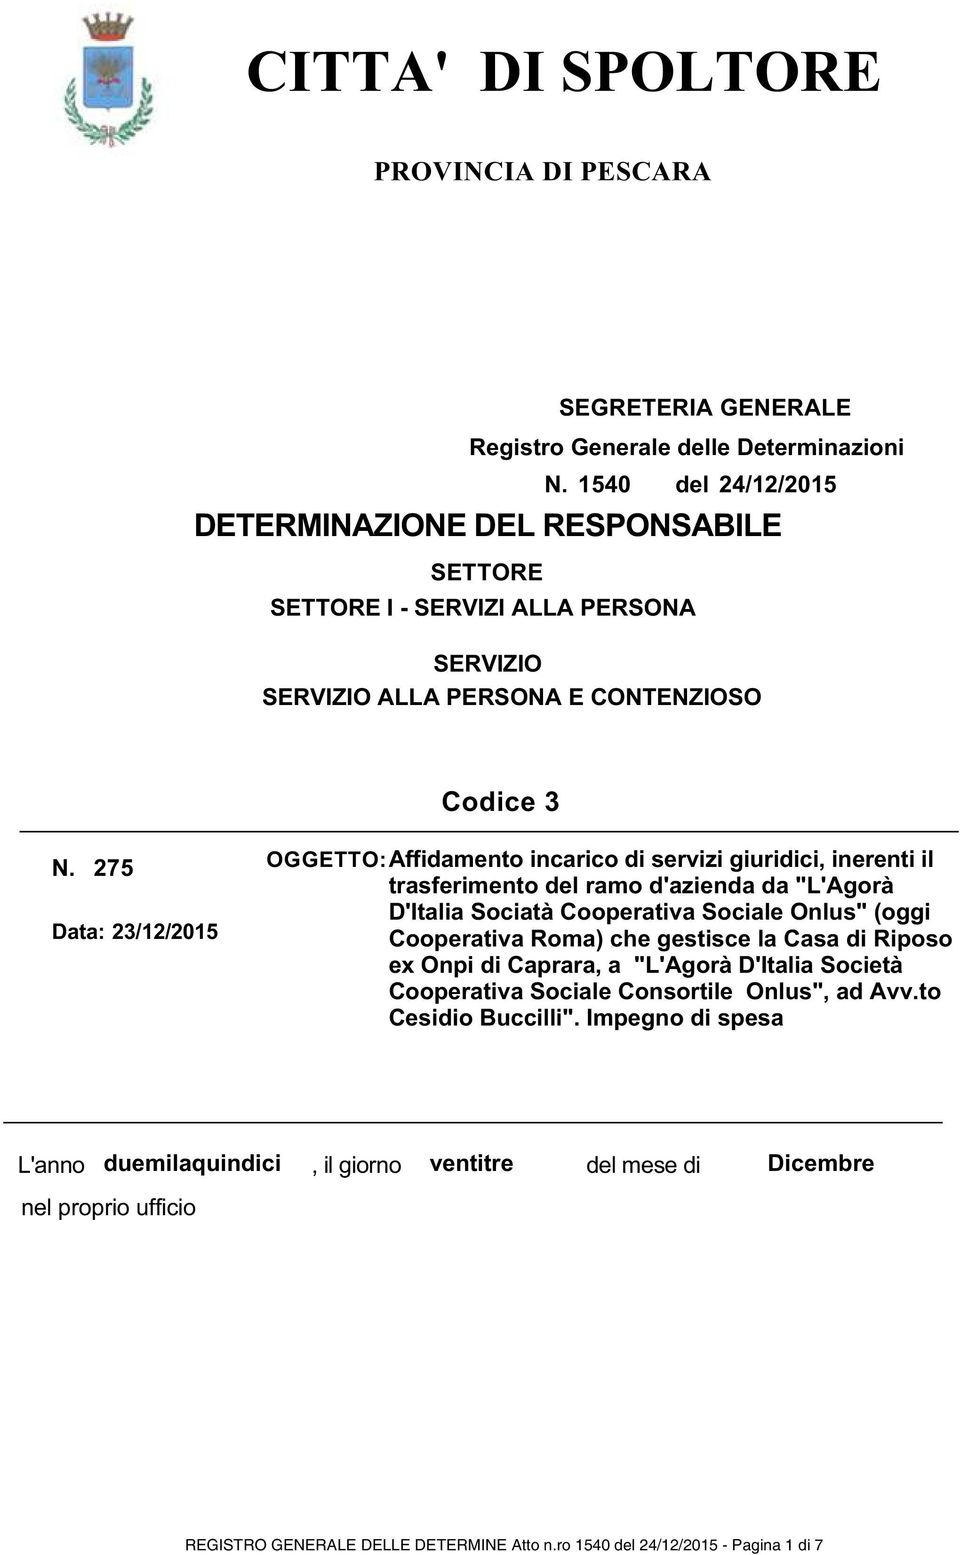 275 Data: 23/12/2015 OGGETTO: Affidamento incarico di servizi giuridici, inerenti il trasferimento del ramo d'azienda da "L'Agorà D'Italia Sociatà Cooperativa Sociale Onlus" (oggi Cooperativa